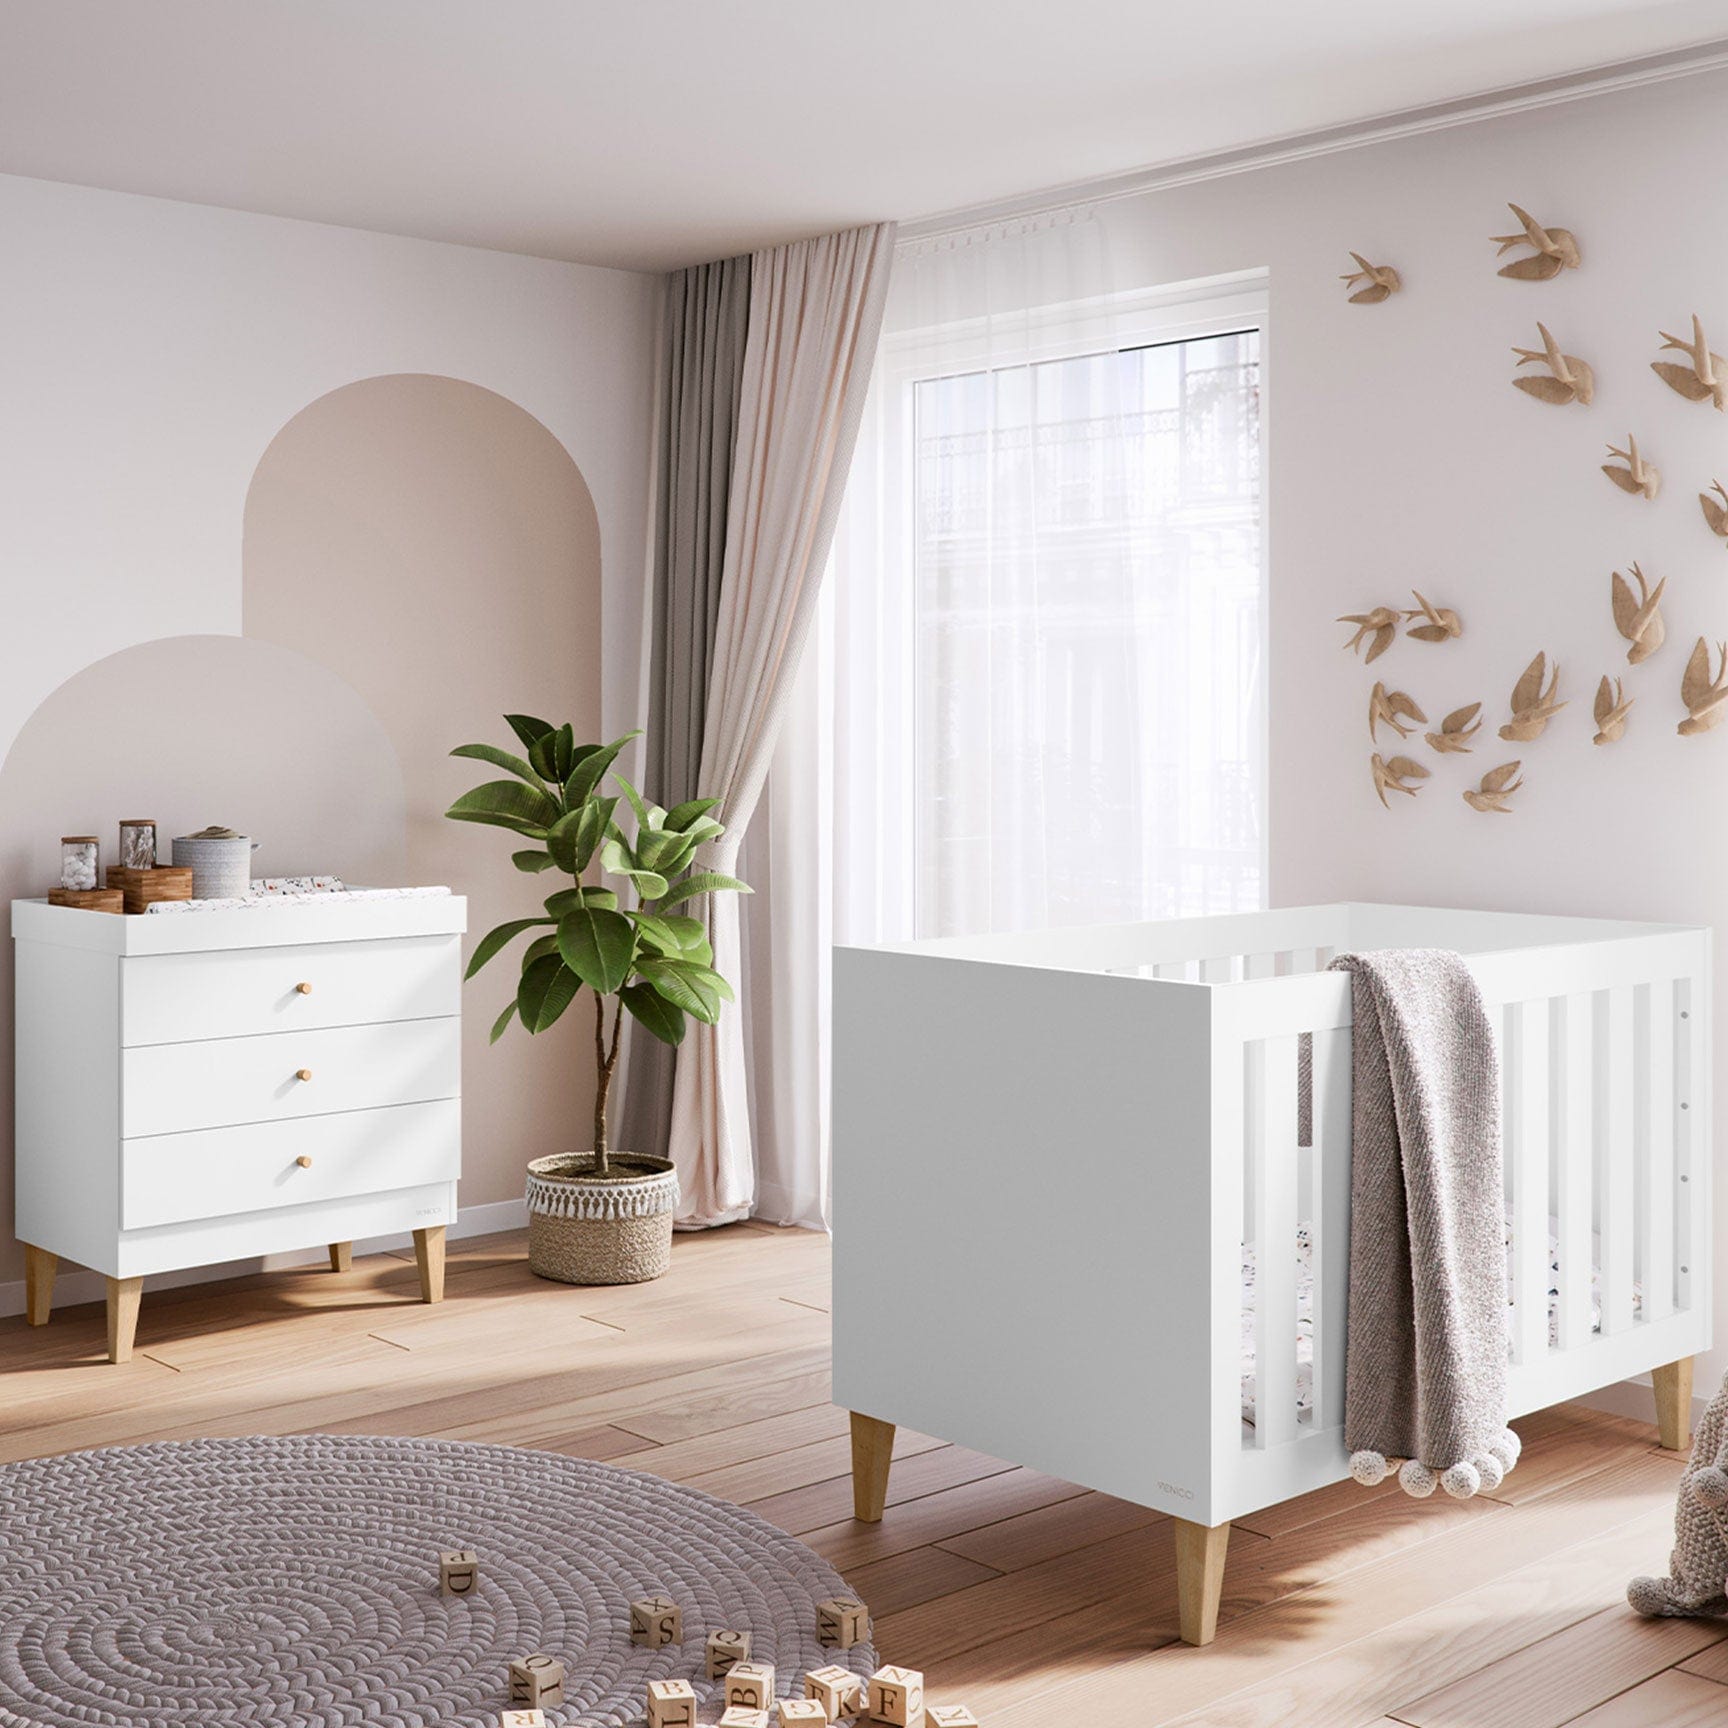 Venicci Saluzzo 2 Piece Dresser Roomset in Premium White Nursery Room Sets